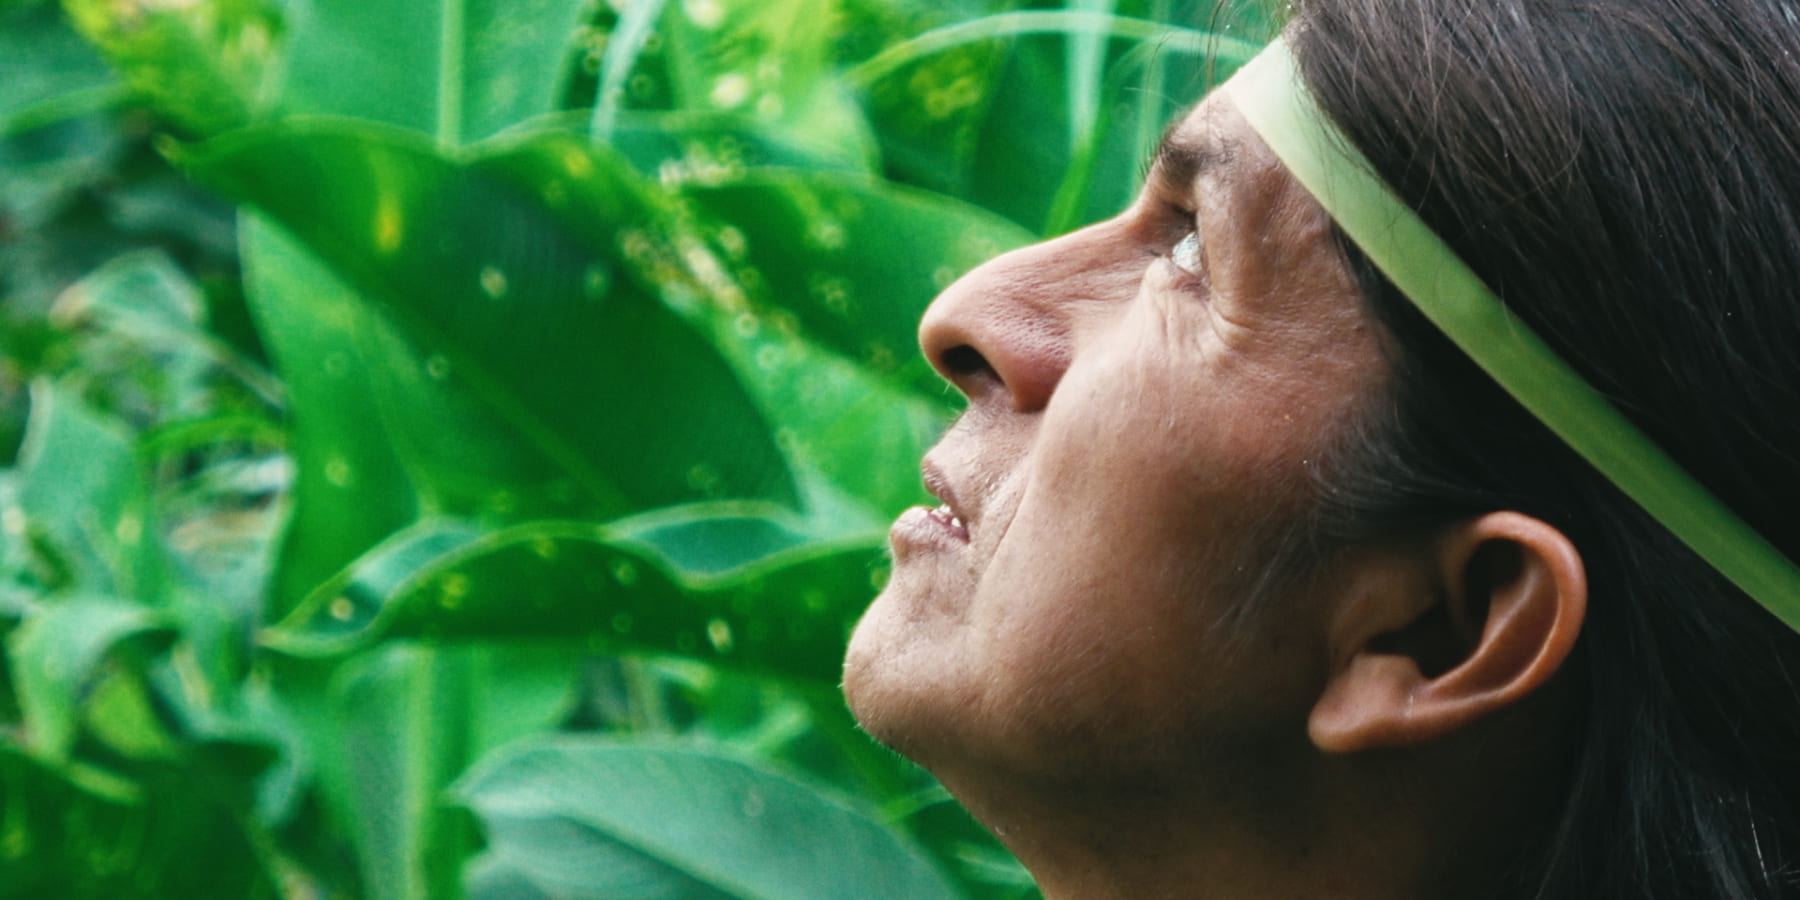 アマゾン先住民族の「ありのまま」の姿を映し出す、映画「カナルタ」